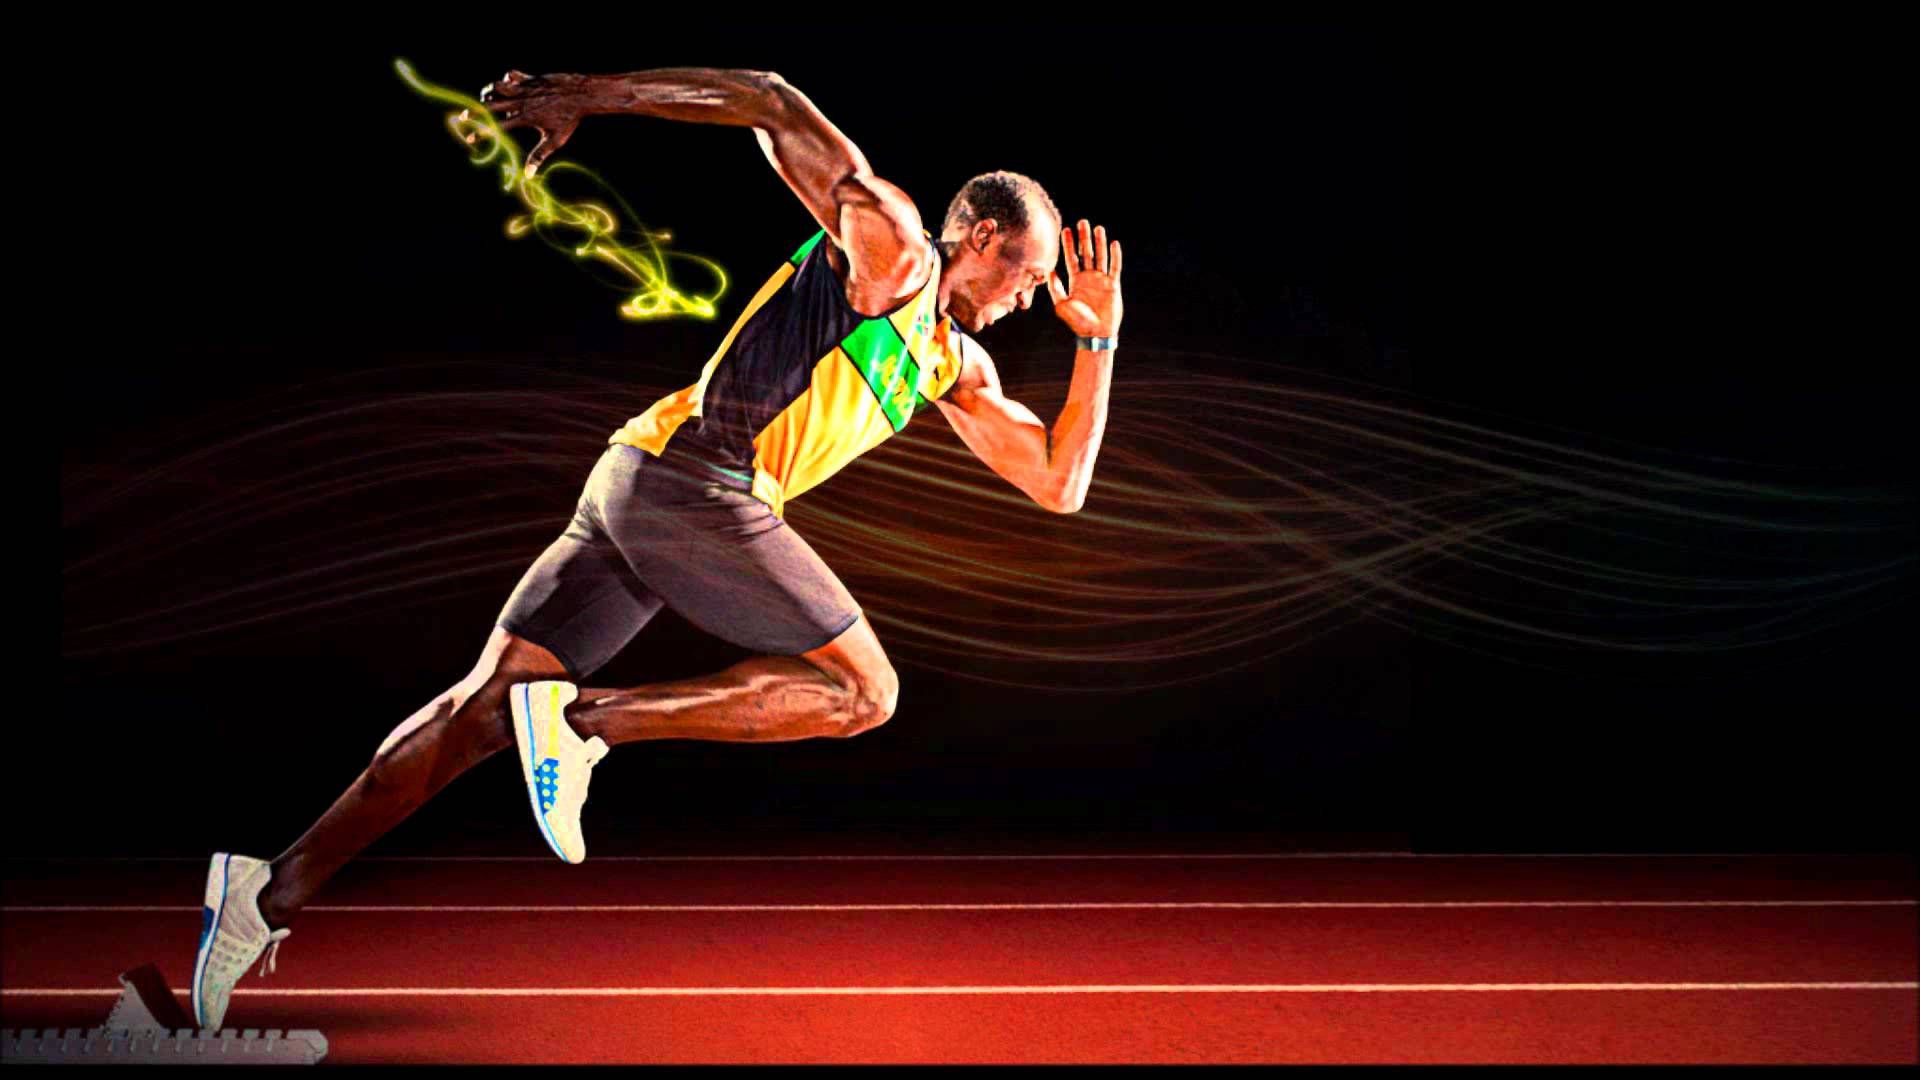 Usain Bolt Sprinter Wallpaper